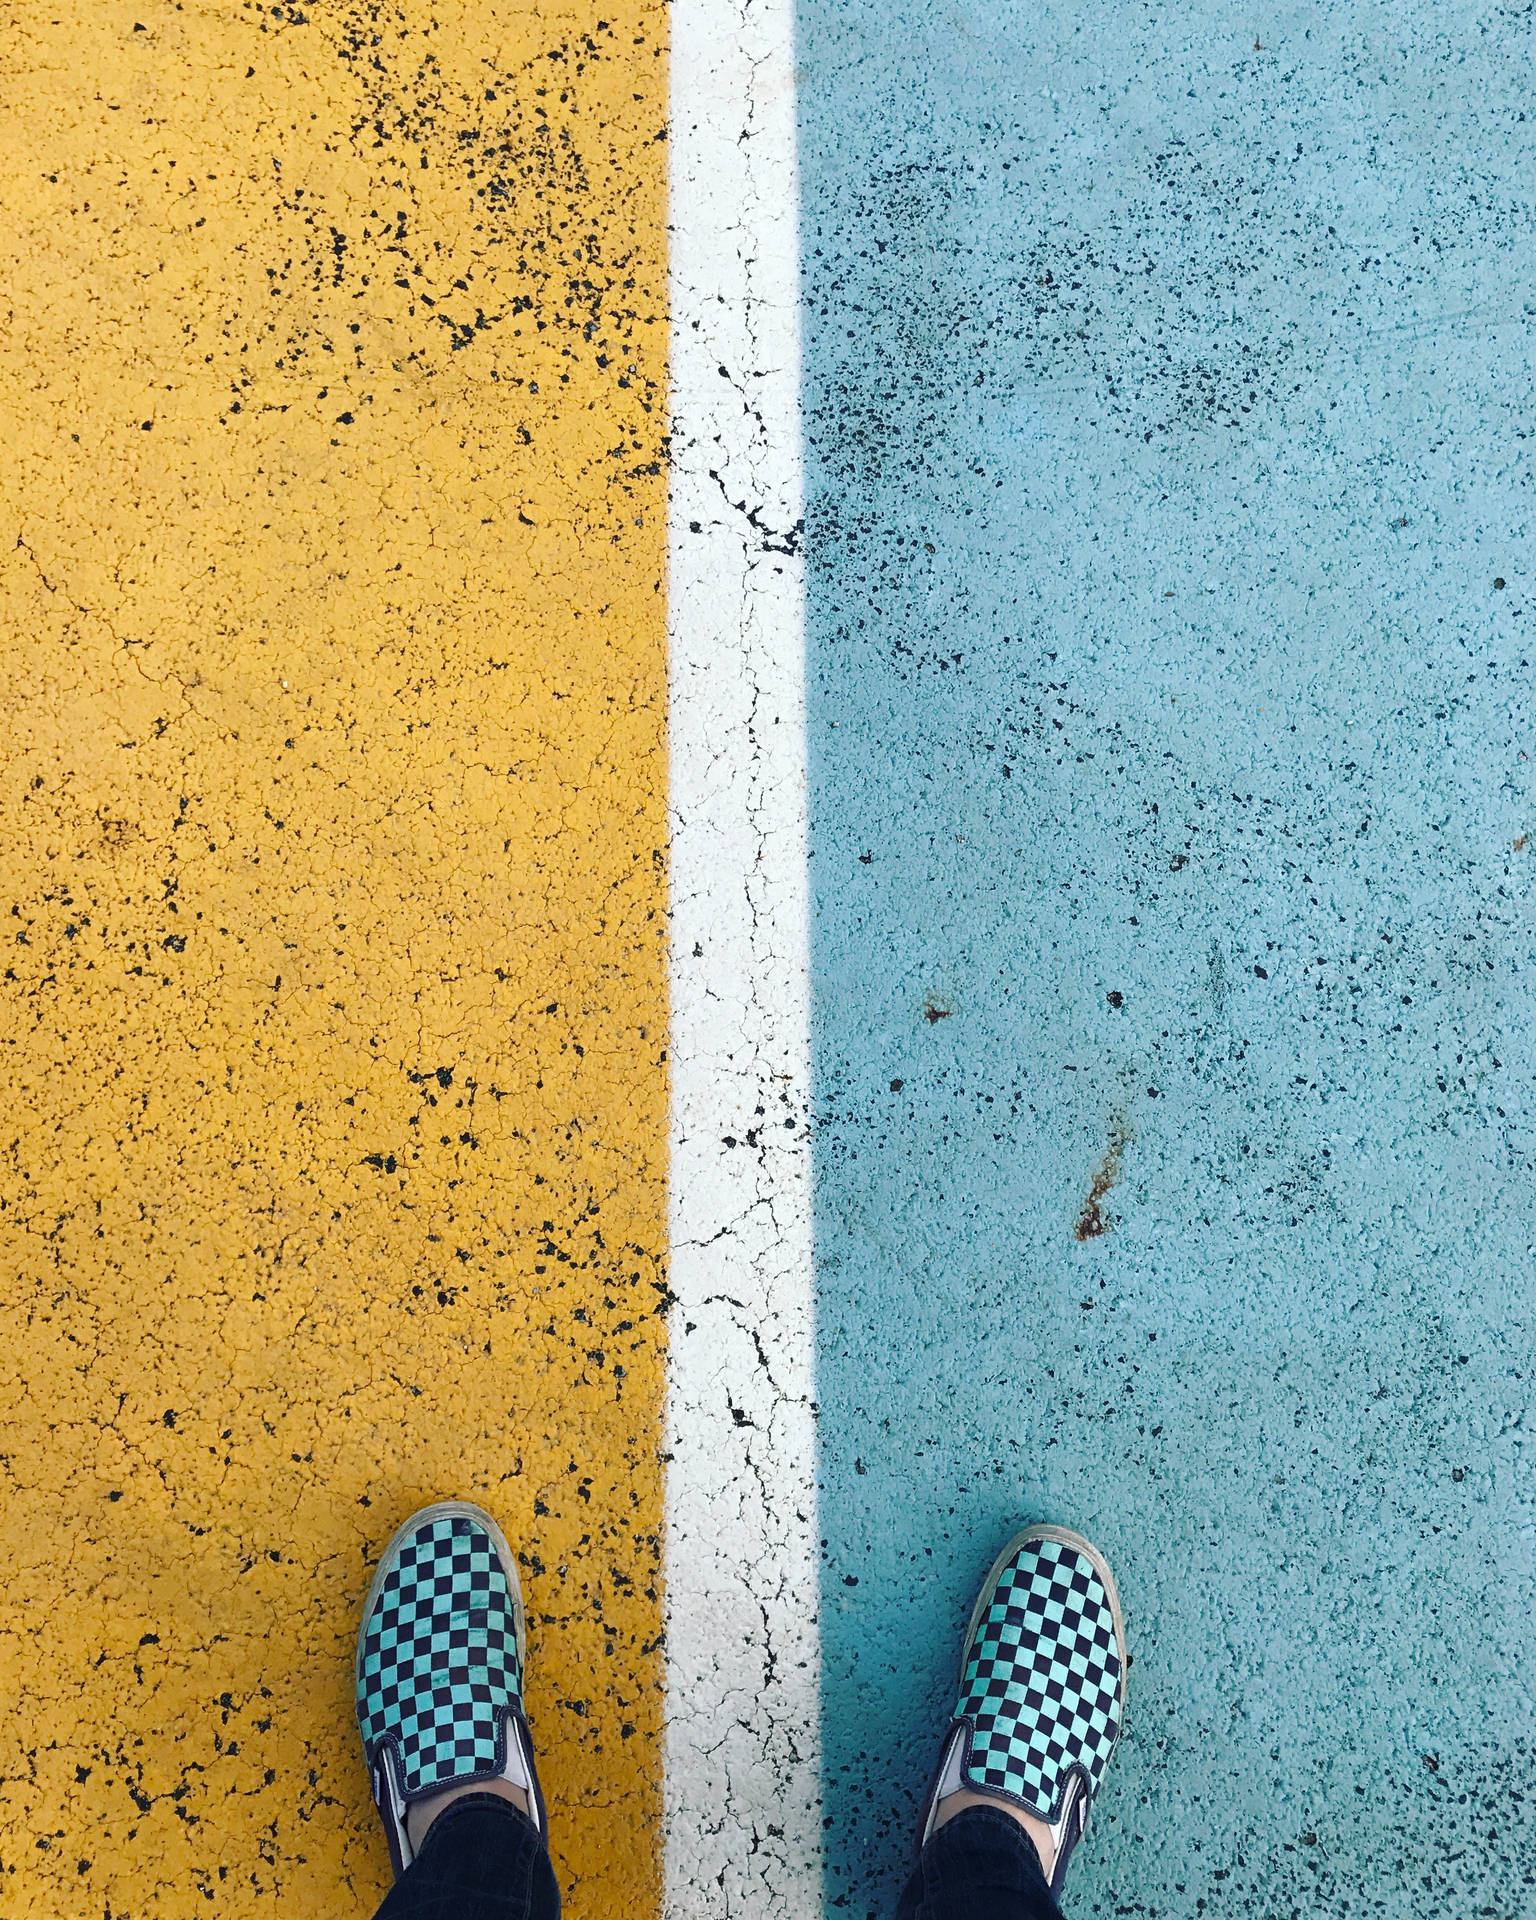 Concrete Texture Slip-on Shoes Wallpaper